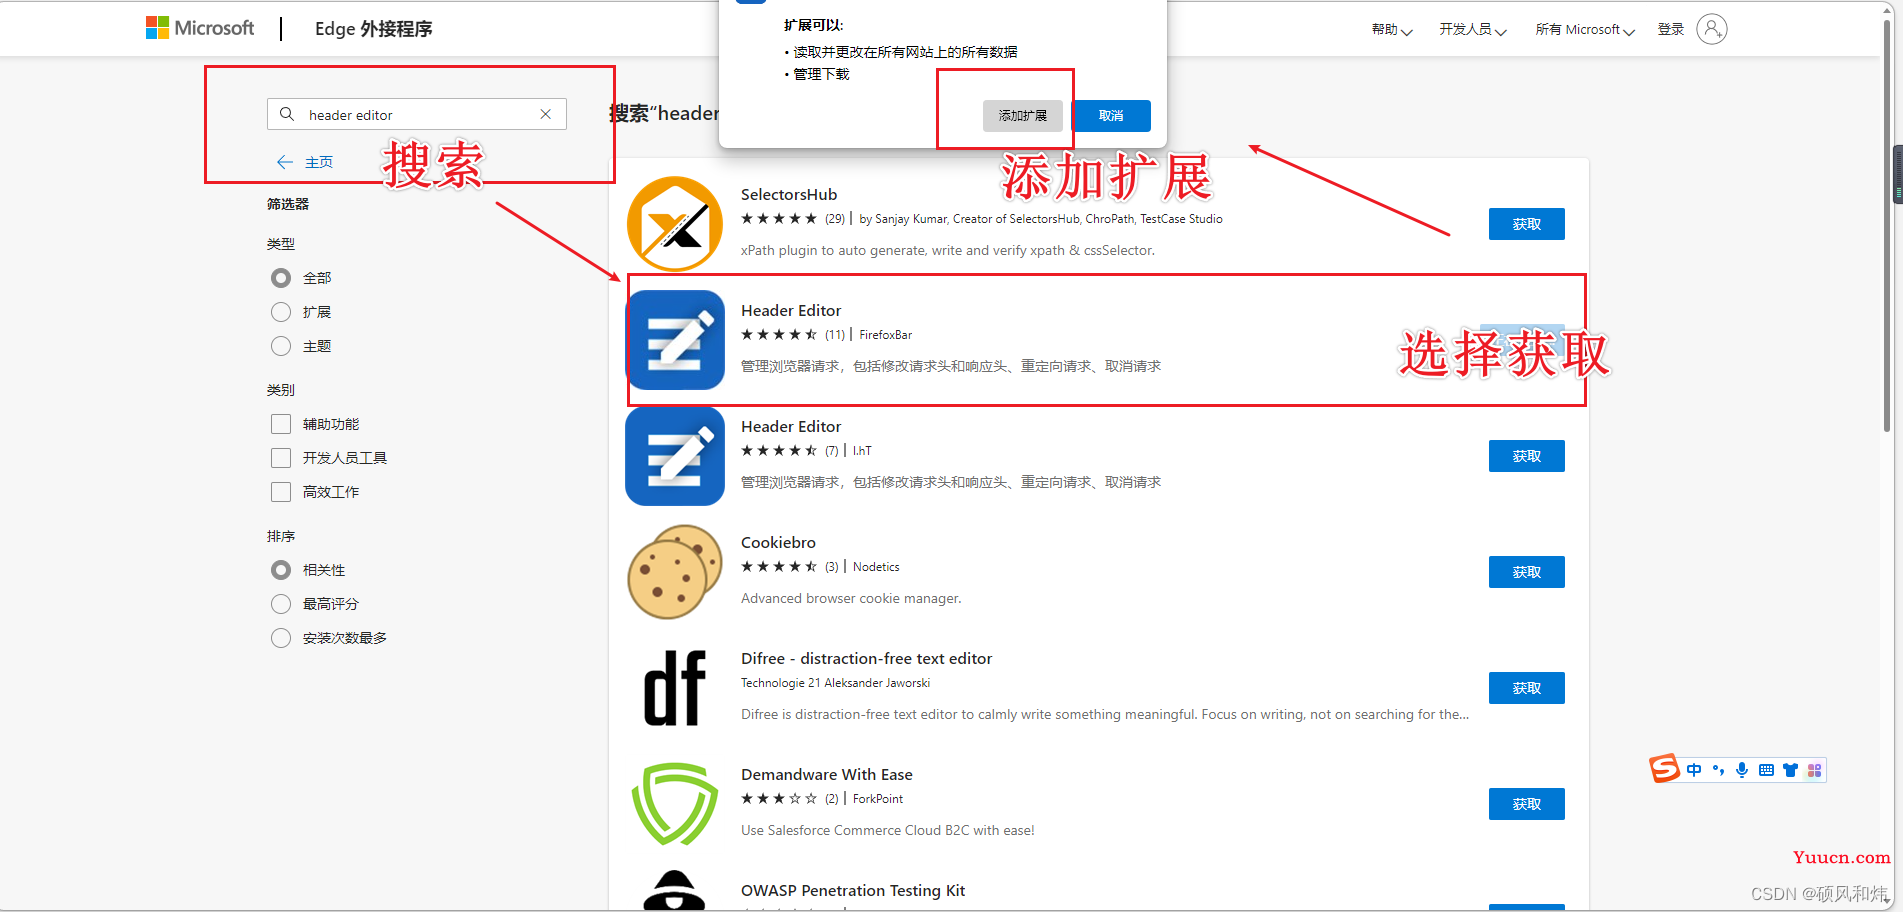 【申请加入New Bing遇到的问题:当前无法使用此页面，cn.bing.com 重定向次数过多】